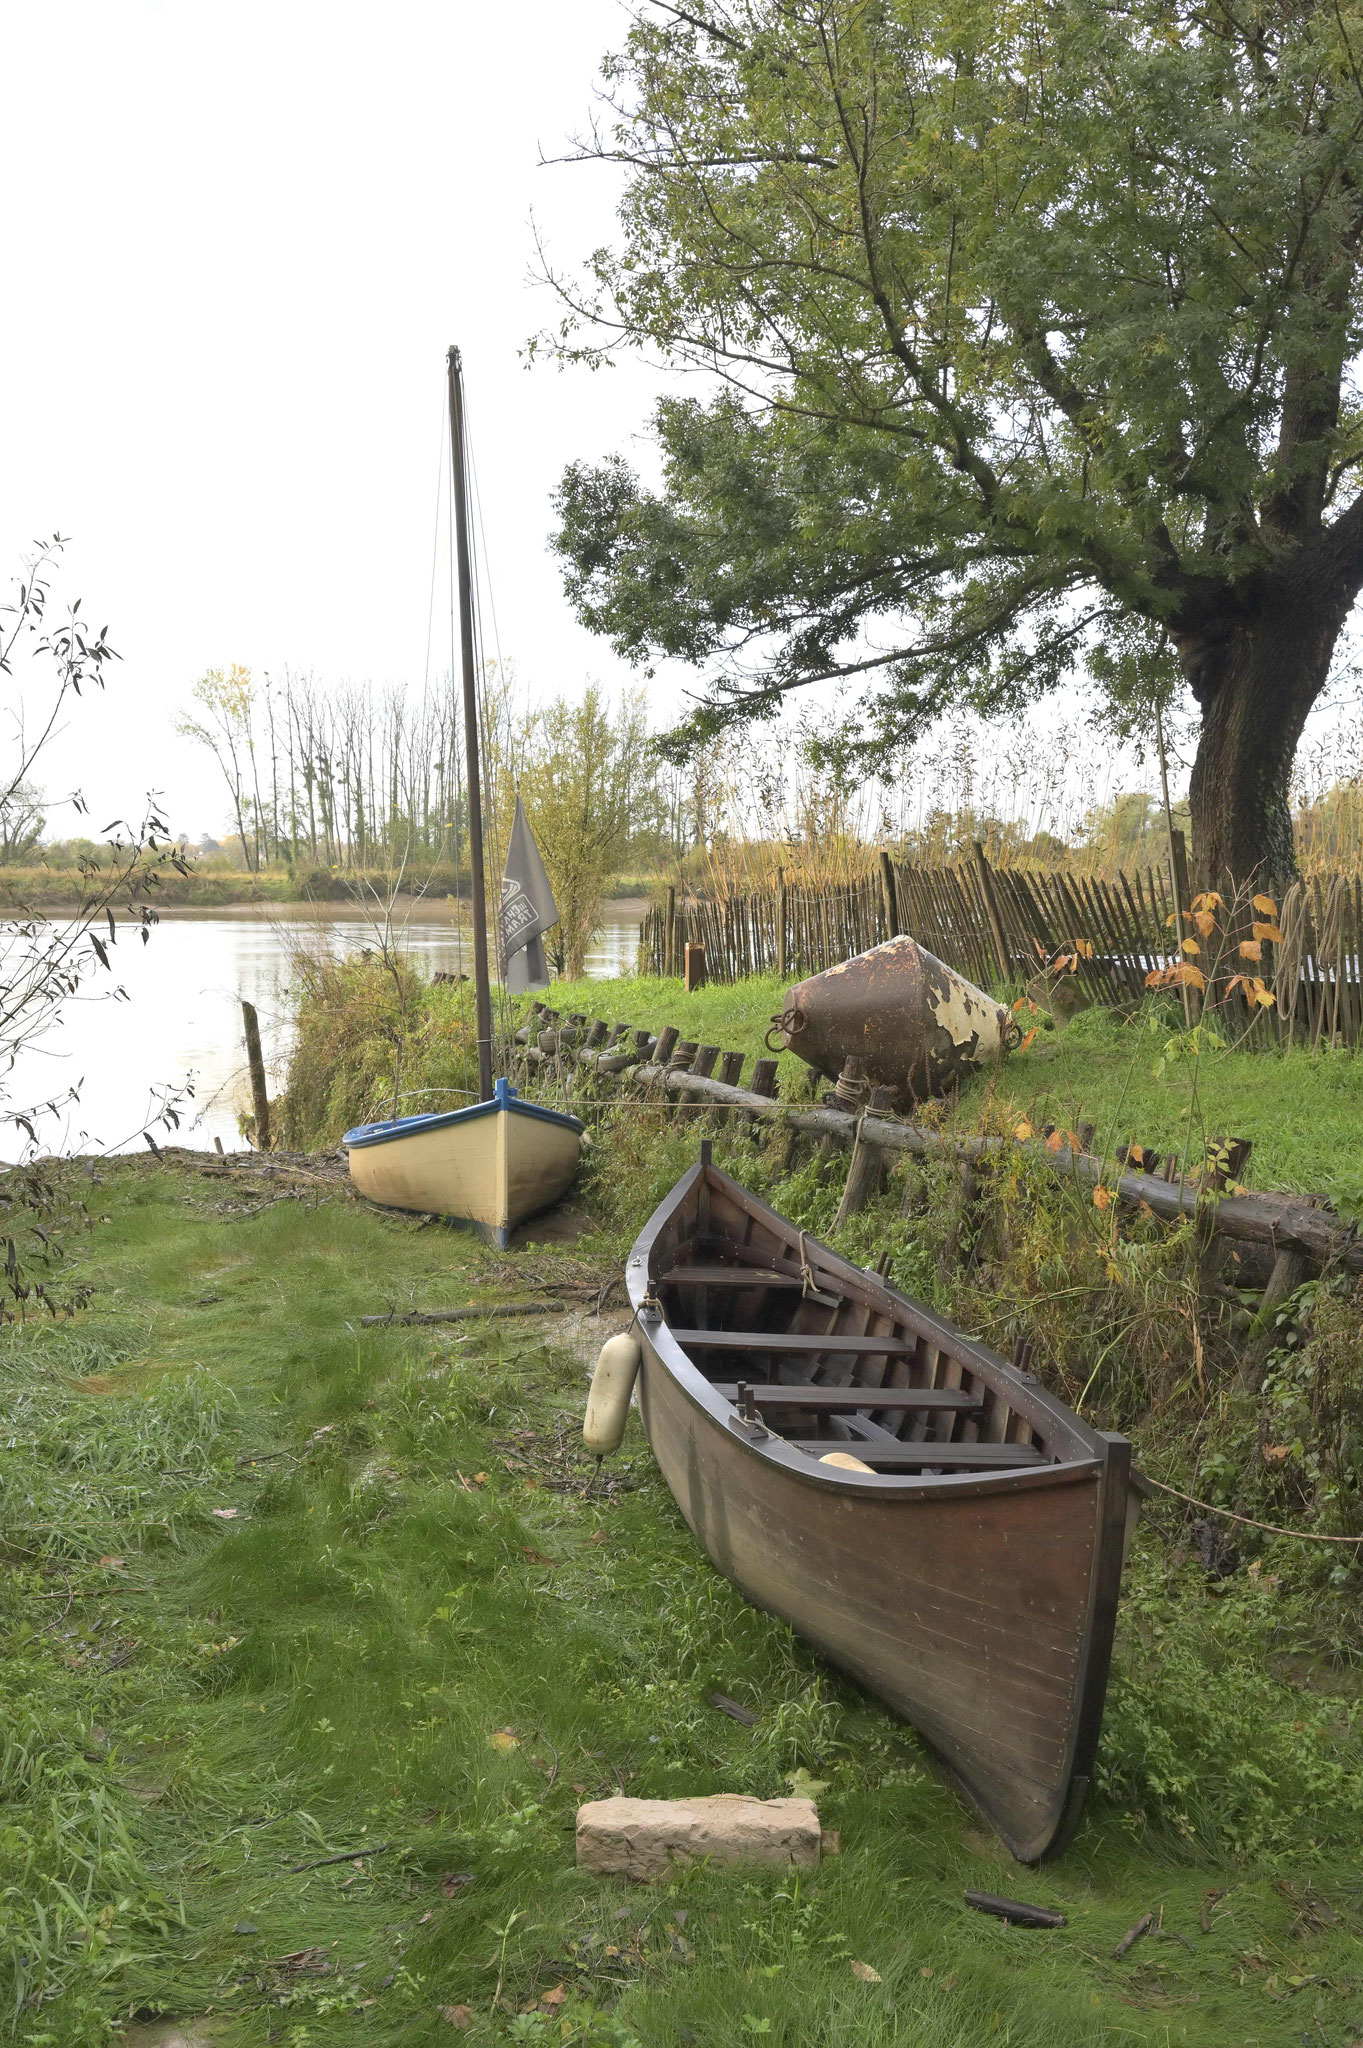 Un lotca, bateau roumain caractéristique du delta du Danube